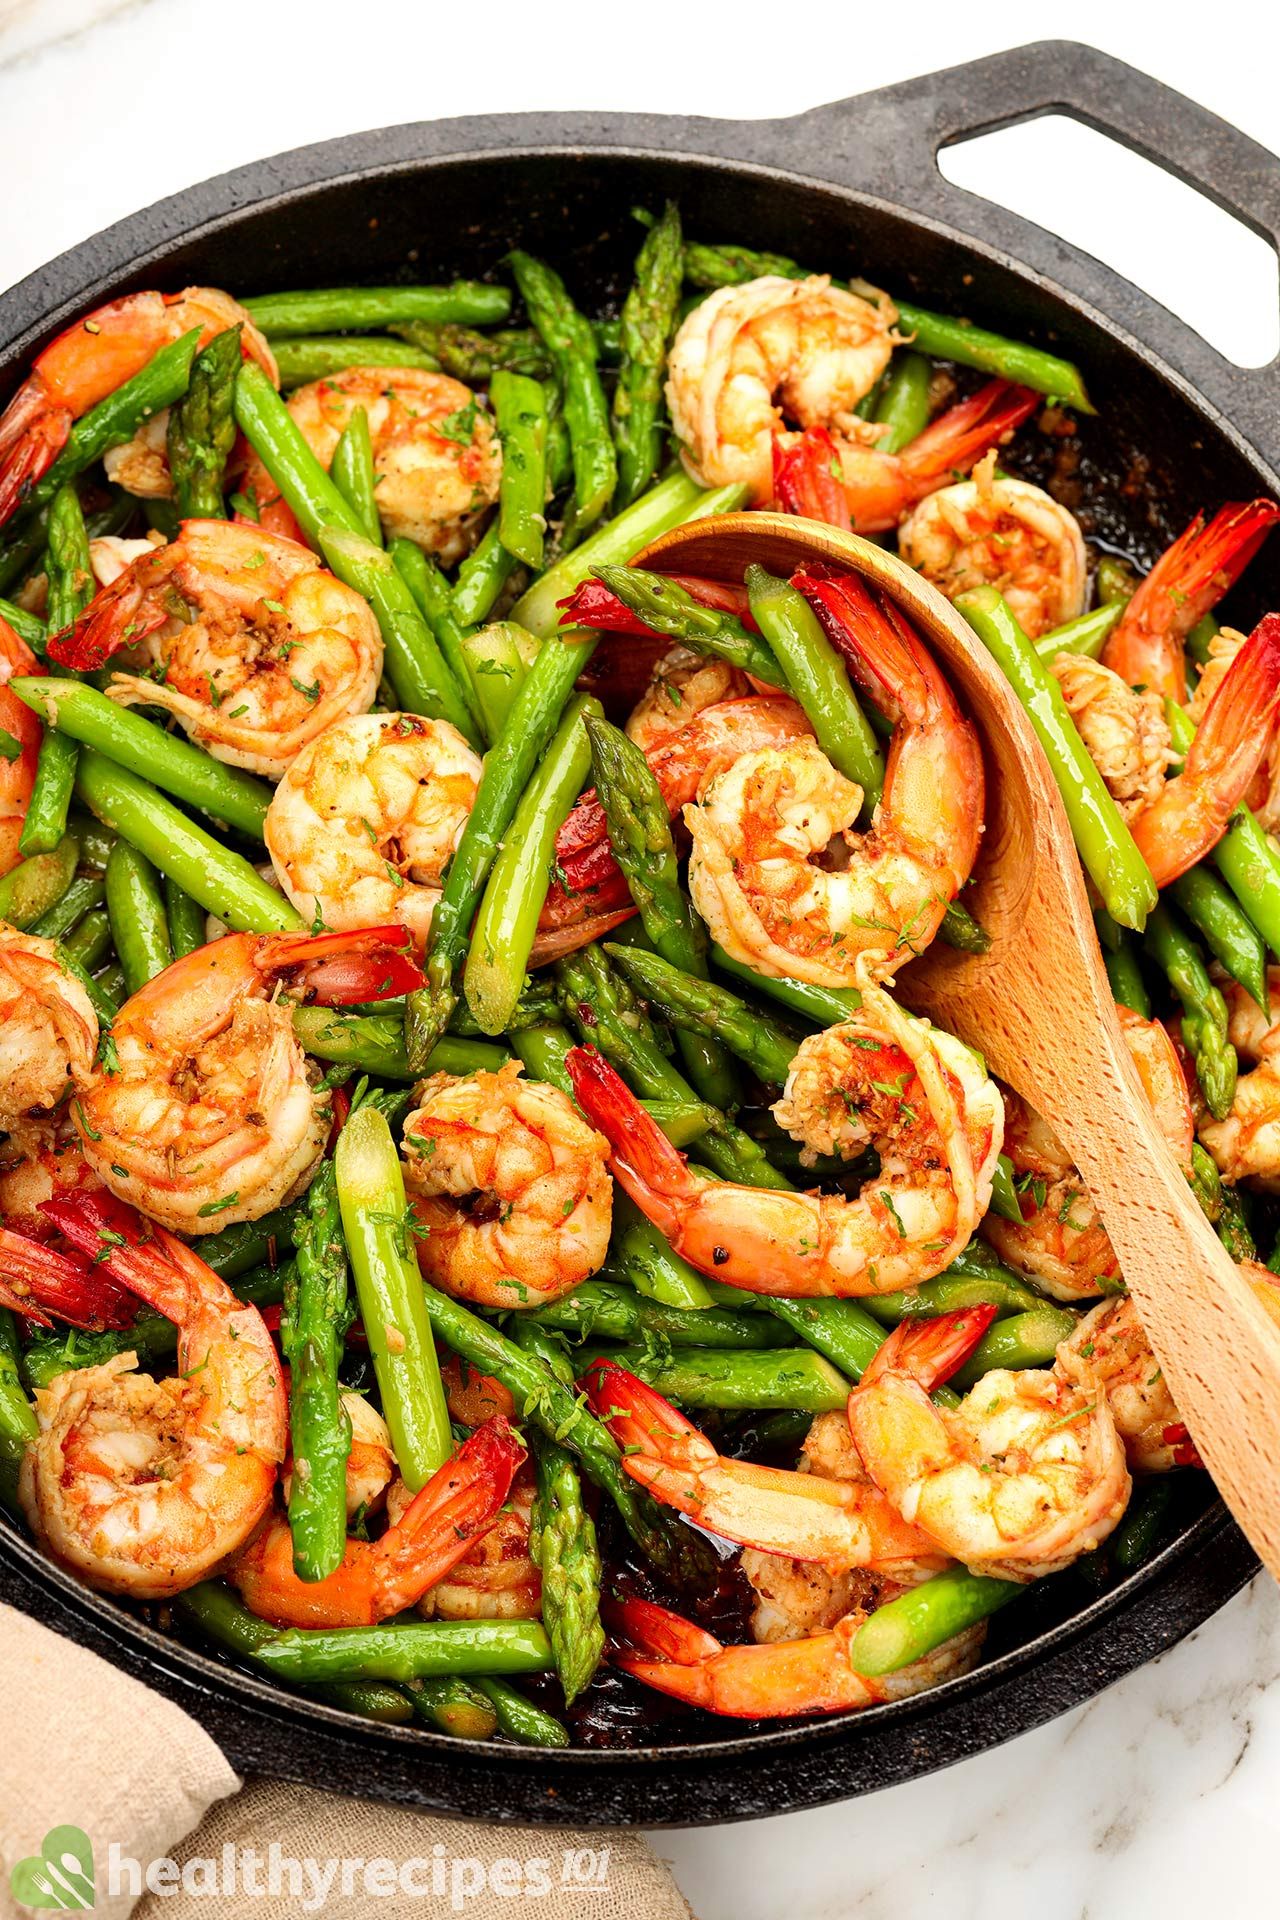 Is Shrimp And Asparagus Healthy